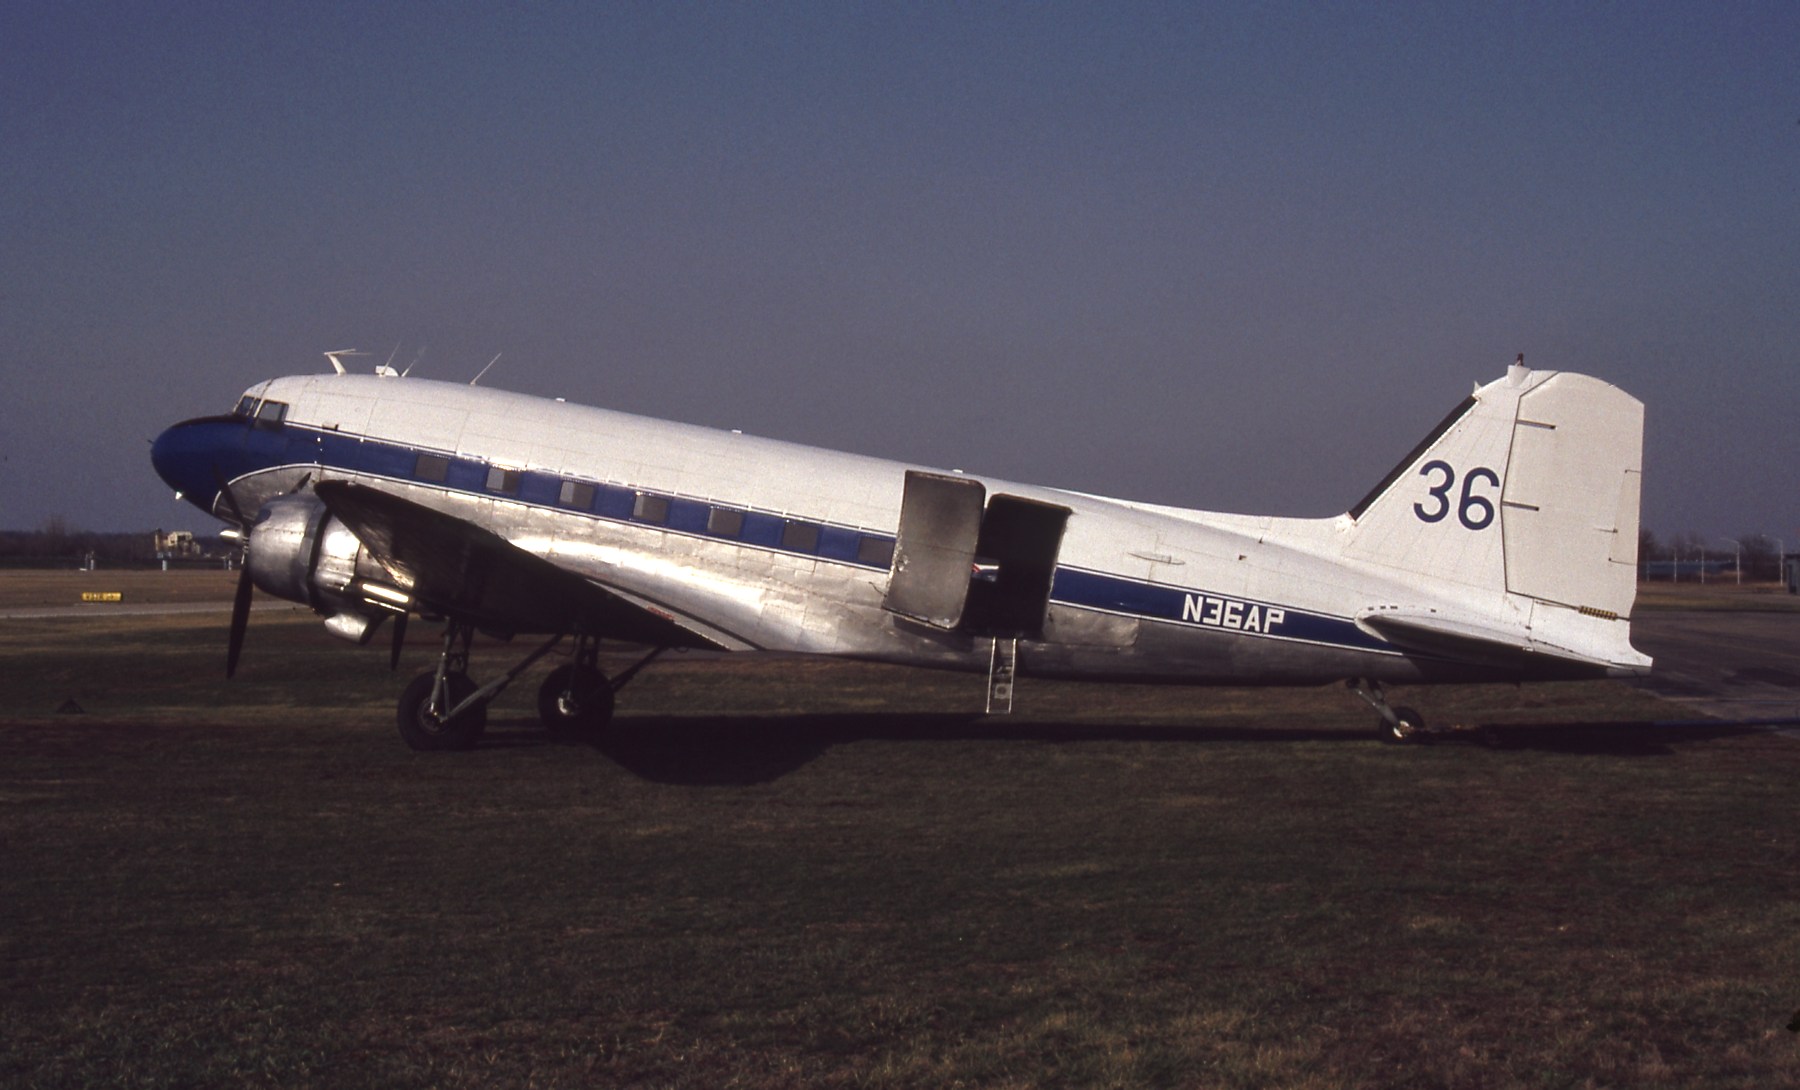 C-GGSU/CGGSU Corporate Douglas DC-3 Airframe Information - AVSpotters.com